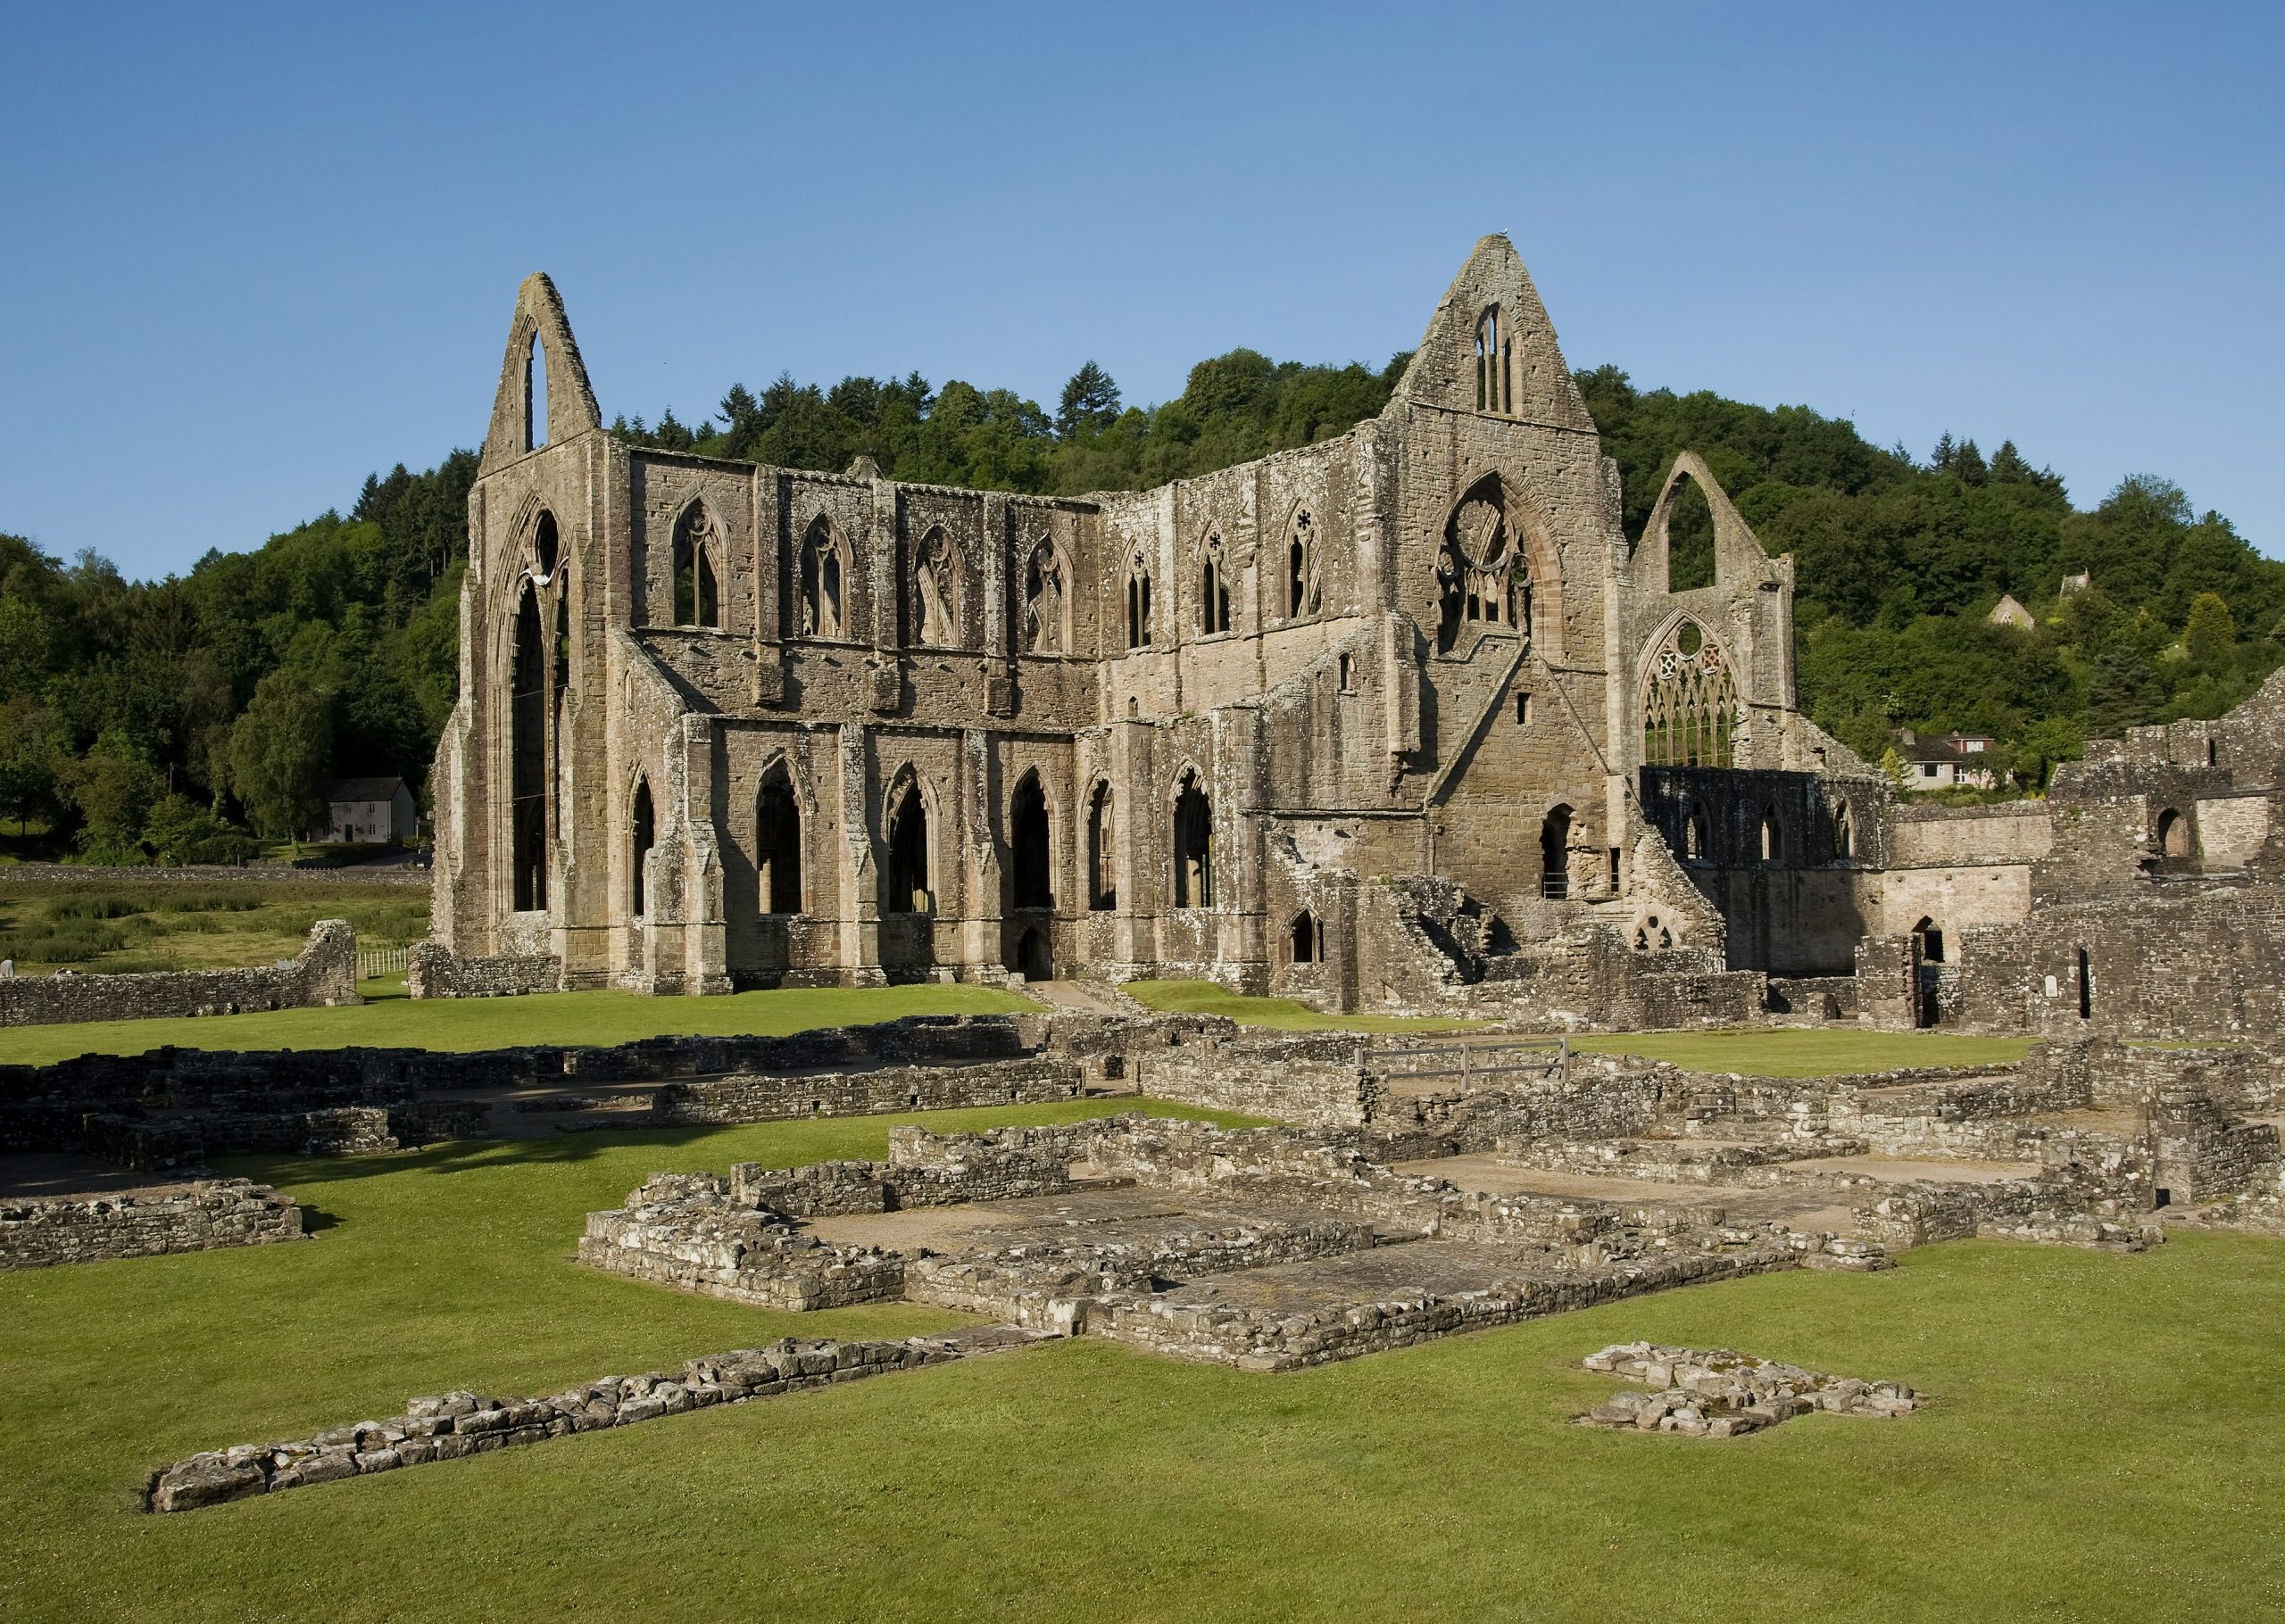 Tintern Abbey, Monmouthshire, Wales, UK